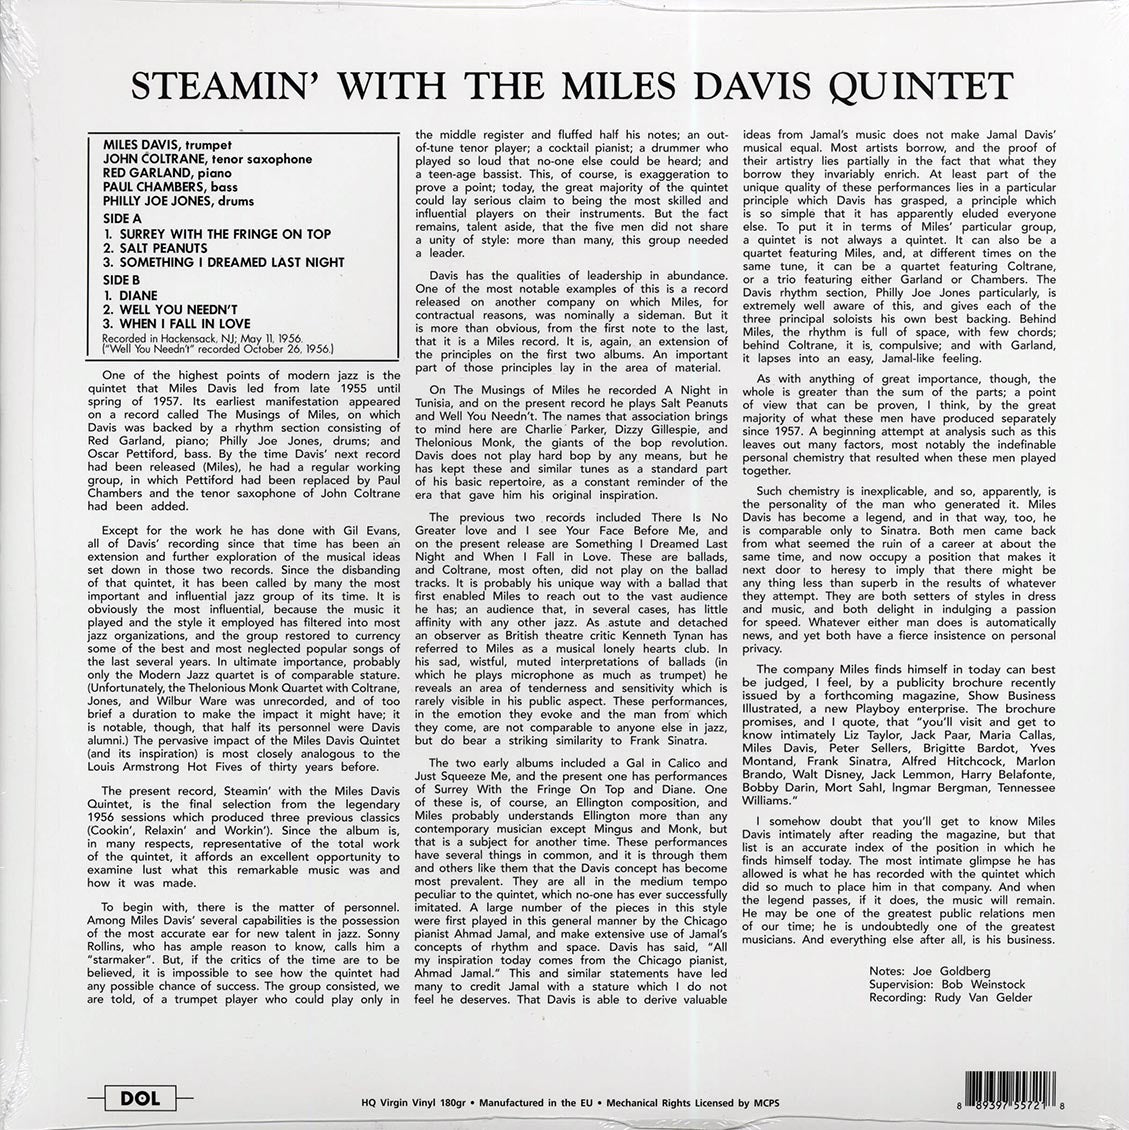 Miles Davis Quintet - Steamin' With The Miles Davis Quintet (180g) - Vinyl LP, LP